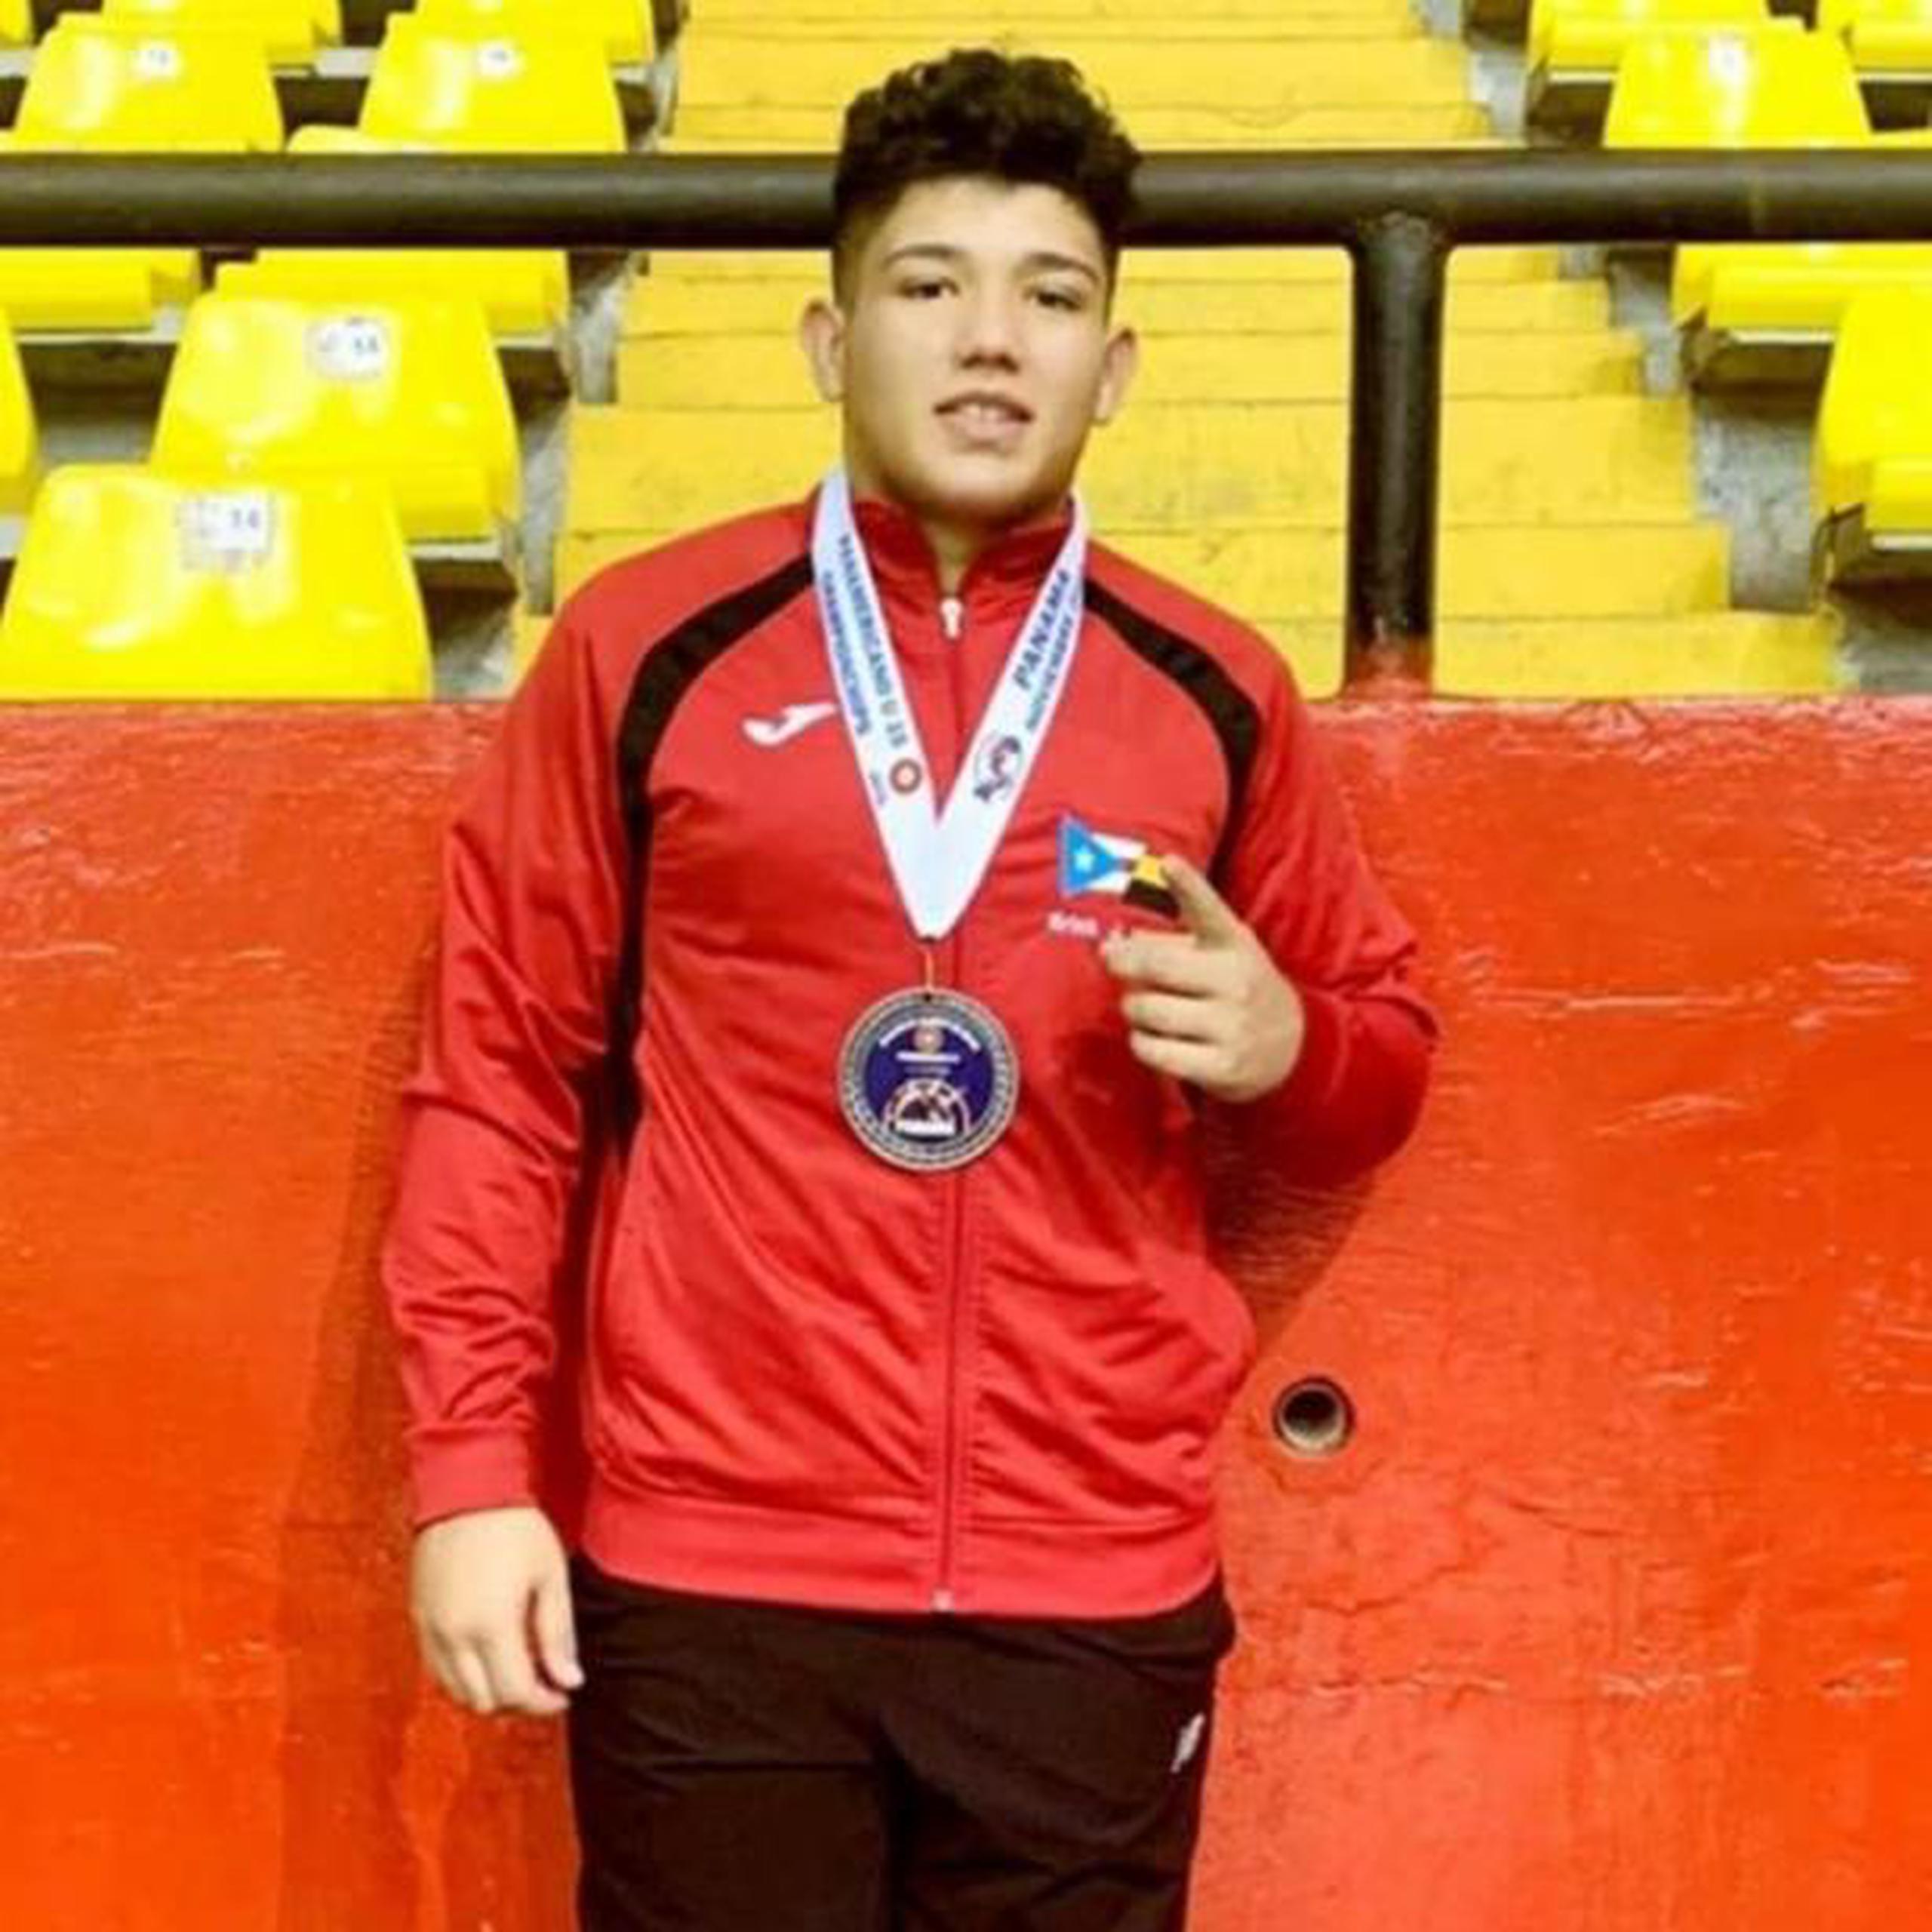 El juvenil luchador Erick Martínez ganó la medalla de plata en el peso de 85 kilogramos durante el torneo efectuado en Panamá. (Facebook)